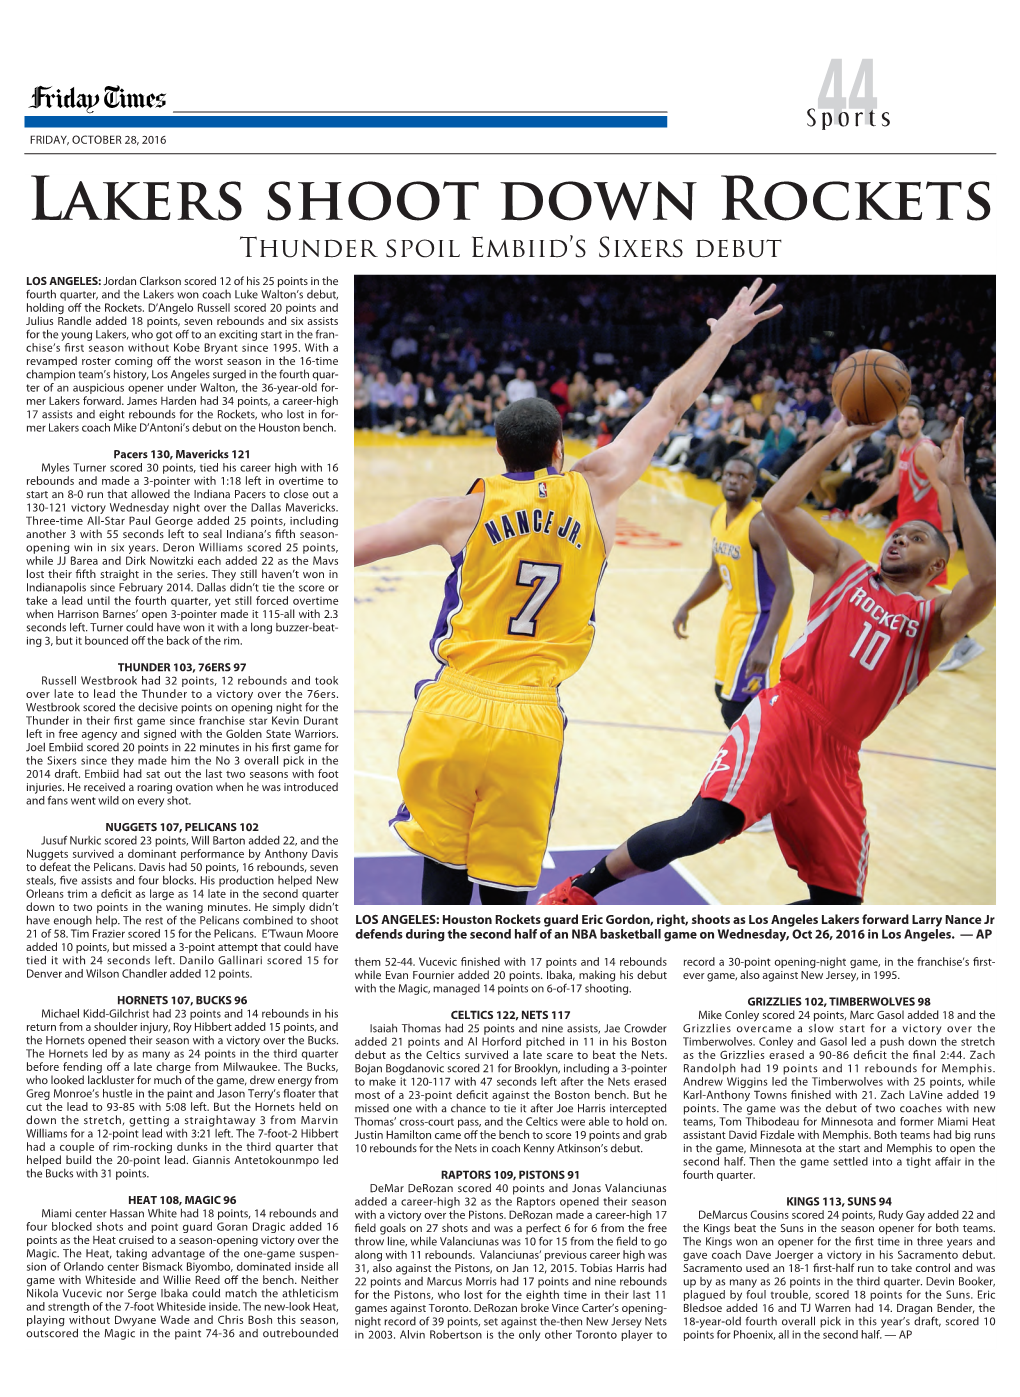 Lakers Shoot Down Rockets